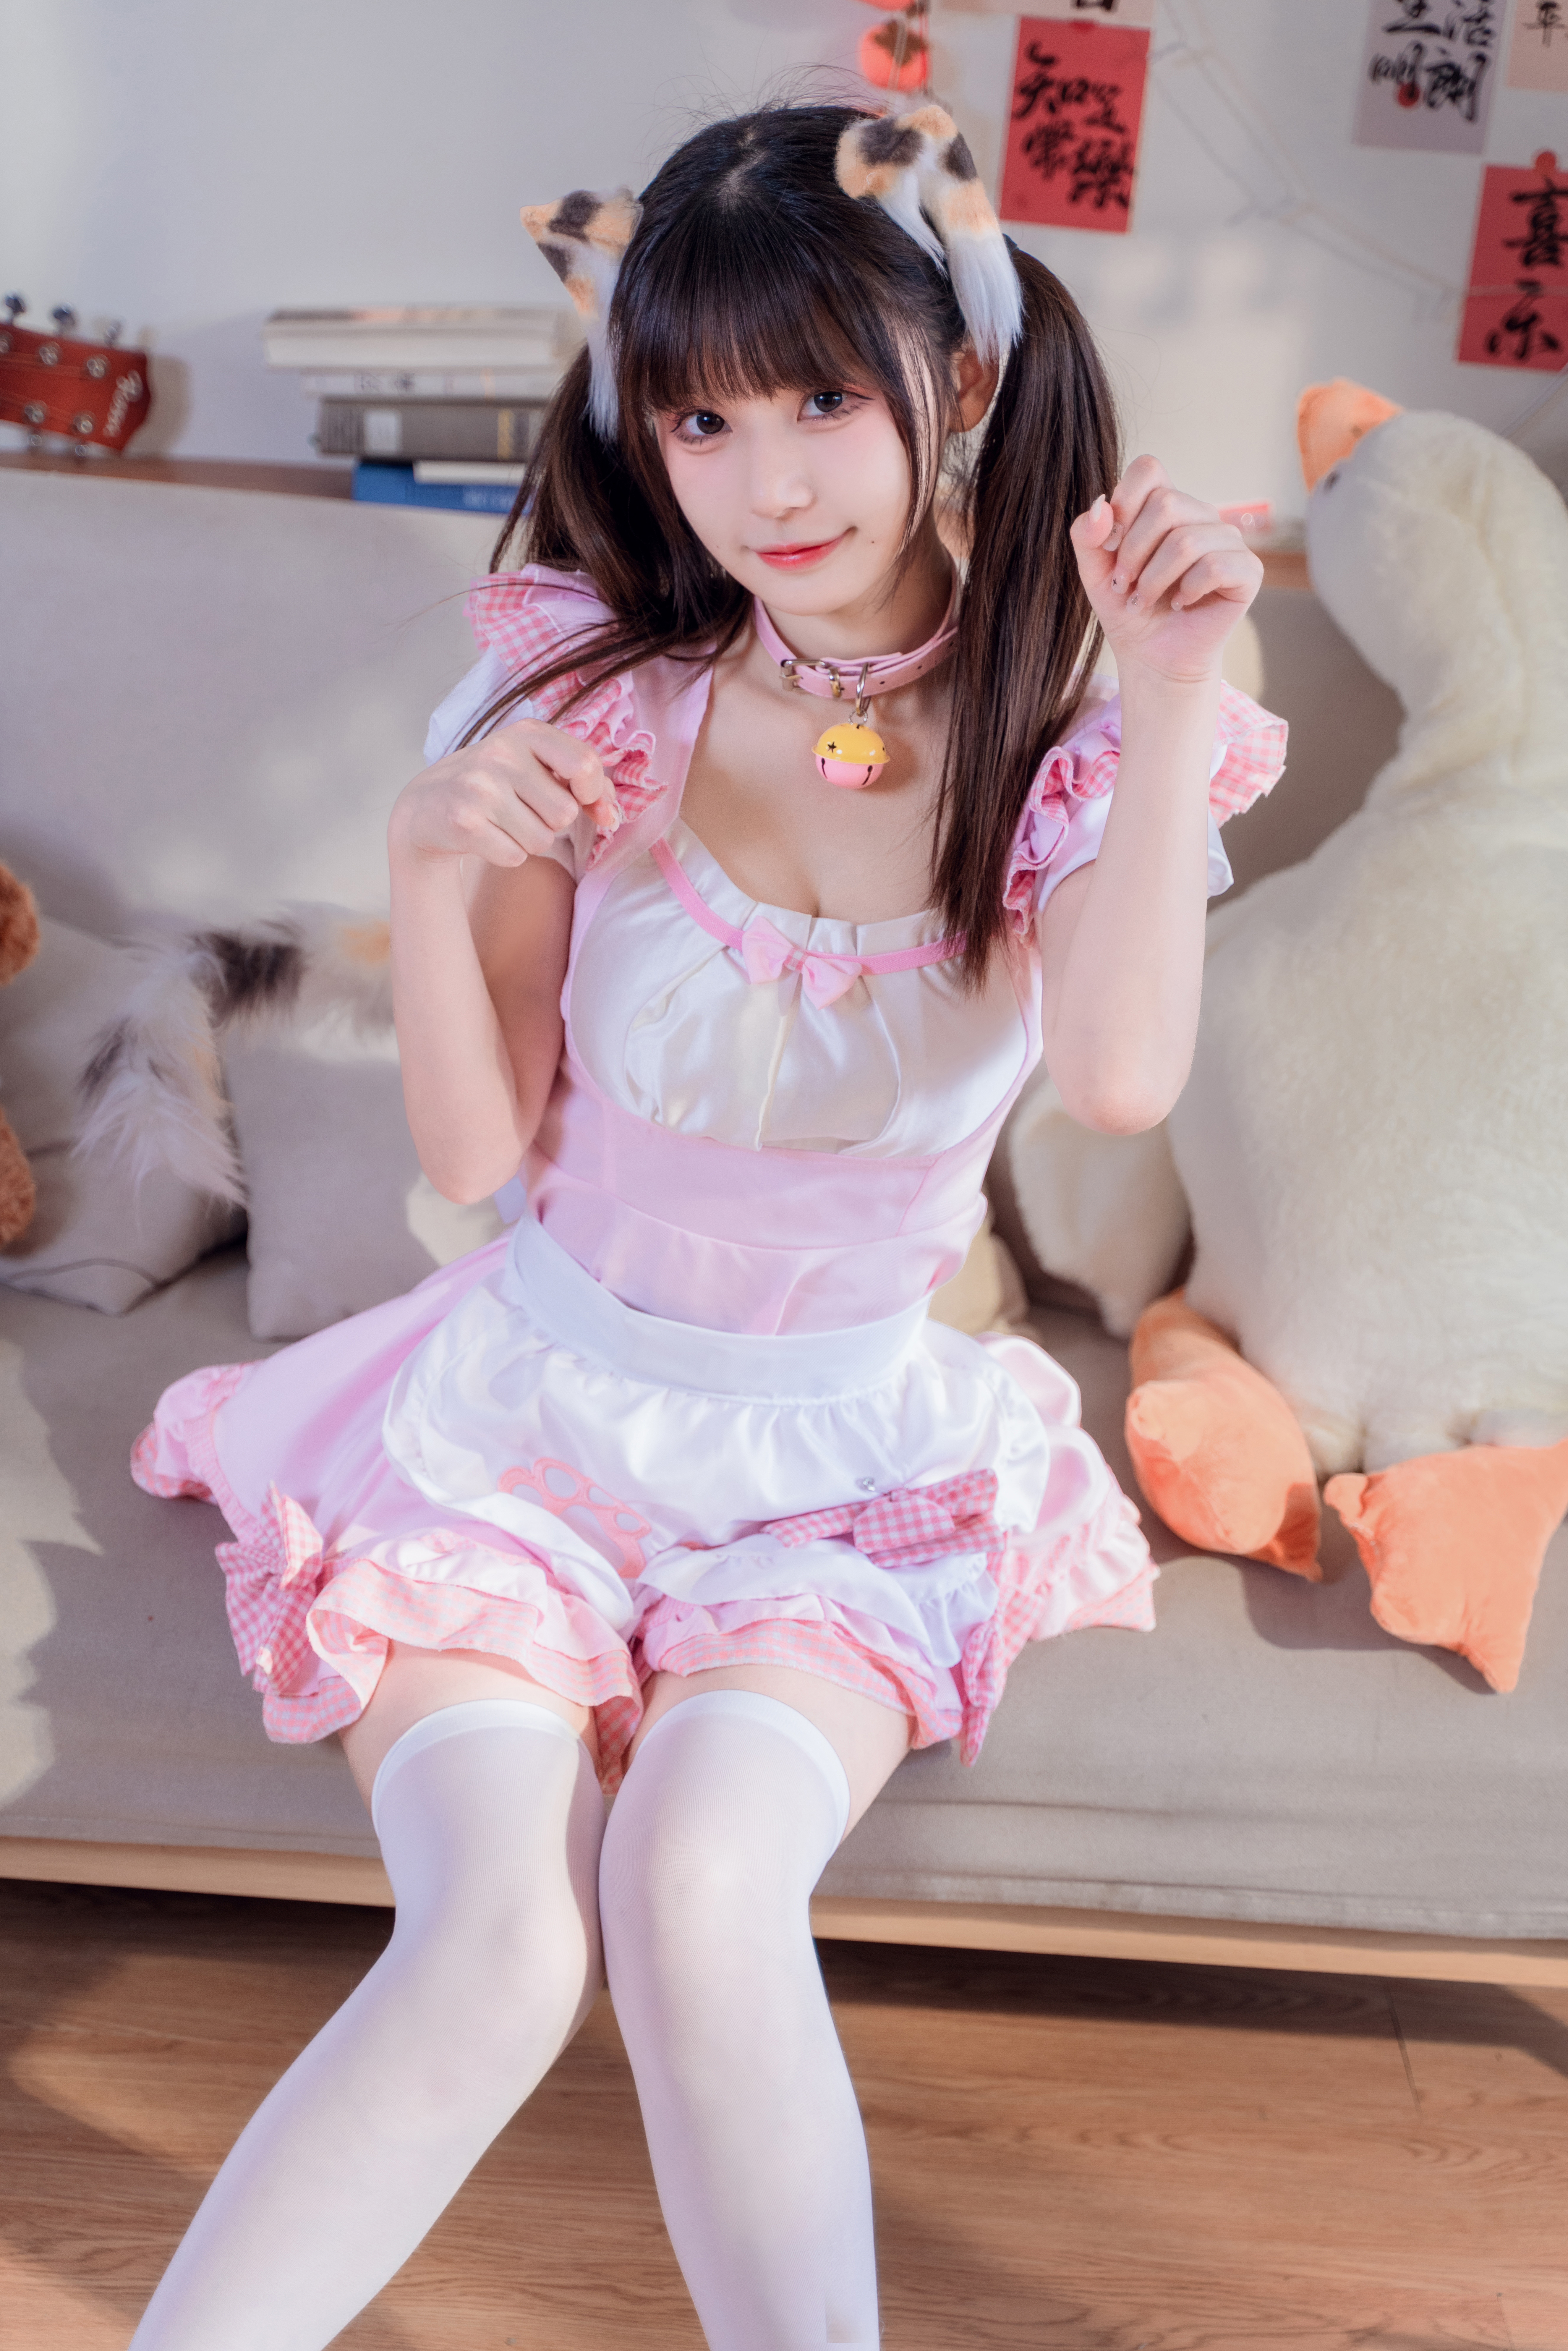 MaoDaRen Cat Girl Pink Skirt Asian 5304x7952